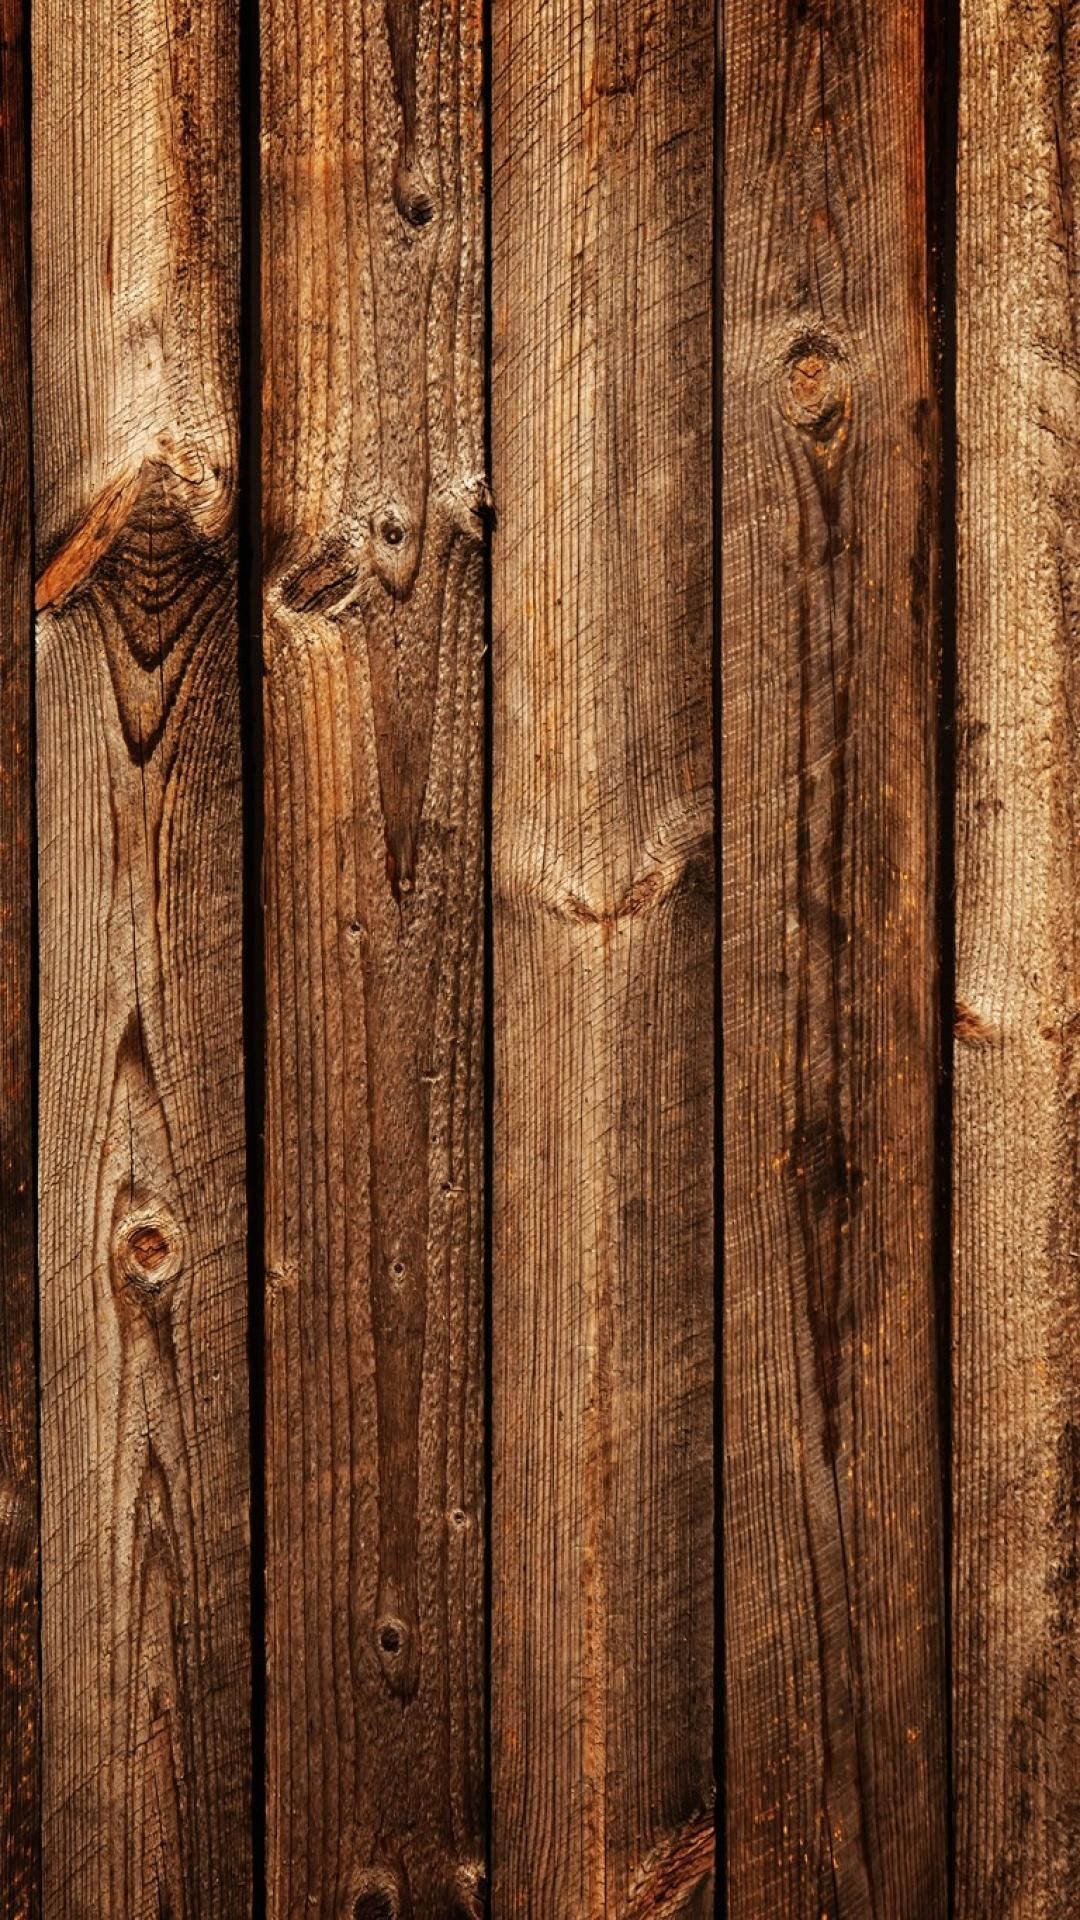 Hình nền gỗ rừng iPhone: Với hình nền gỗ rừng iPhone, bạn sẽ được sử dụng những hình ảnh độc đáo và đầy màu sắc của rừng tự nhiên trên chiếc điện thoại của mình. Hình nền rừng gỗ cho iPhone sẽ giúp bạn thư giãn và tìm lại sự yên bình trong cuộc sống.